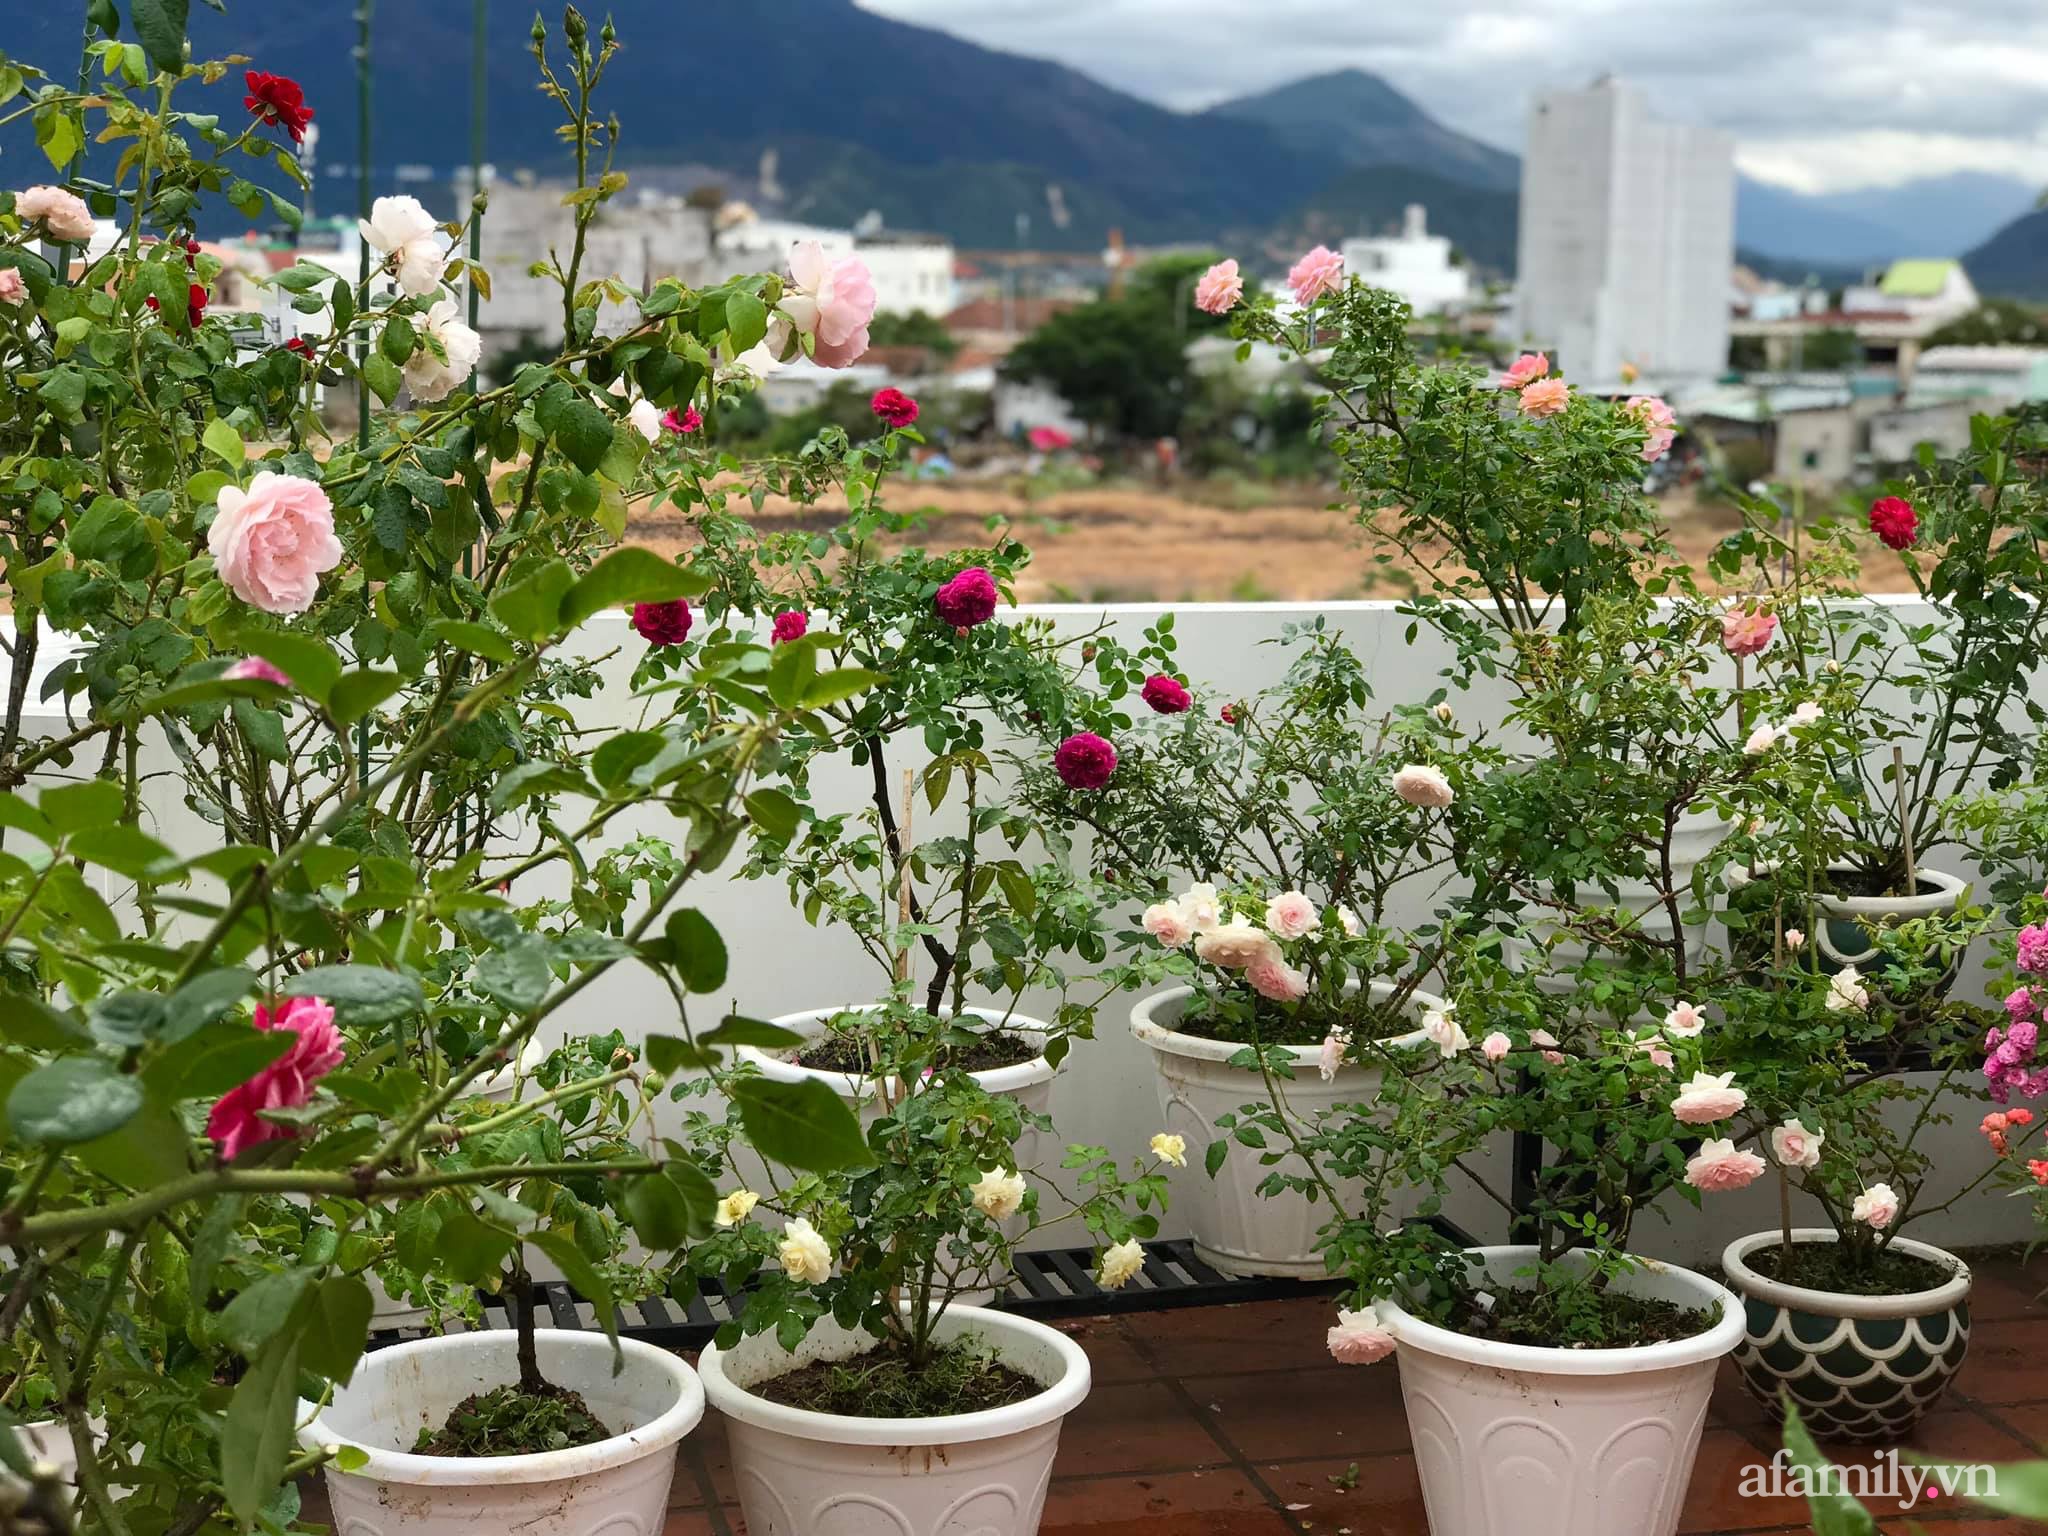 Ngày 20/11 ghé thăm vườn hồng ngát hương dịu dàng khoe sắc trên sân thượng của cô giáo dạy Văn ở Nha Trang - Ảnh 12.